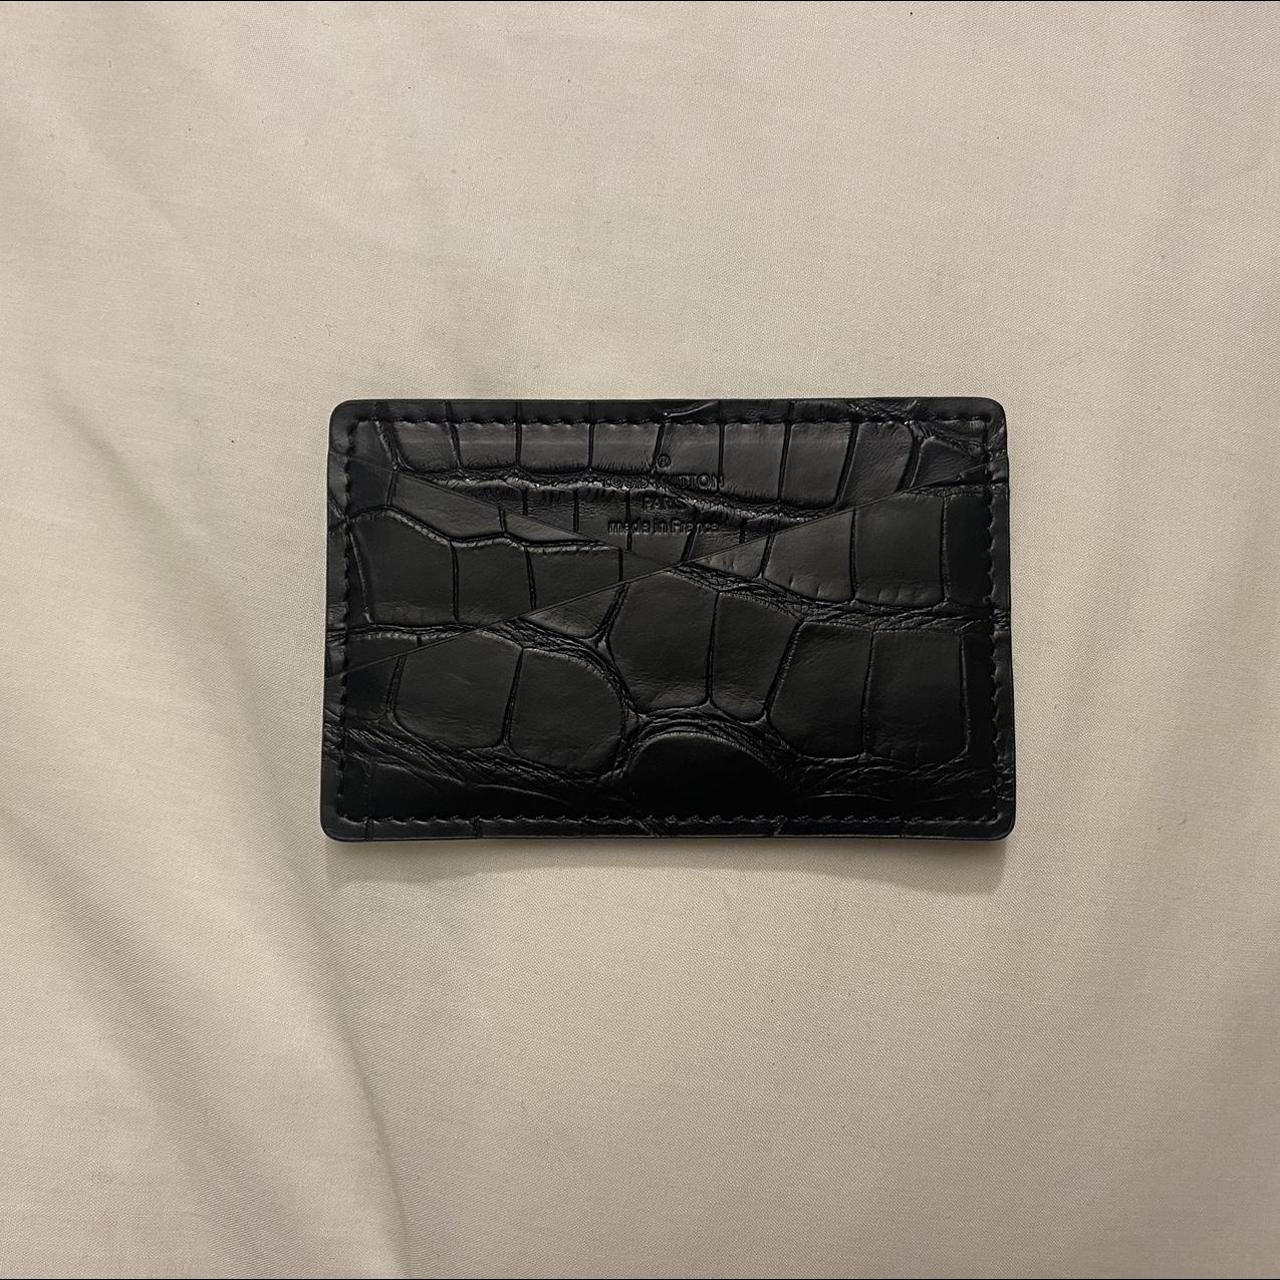 Brand new Louis Vuitton black alligator card holder.